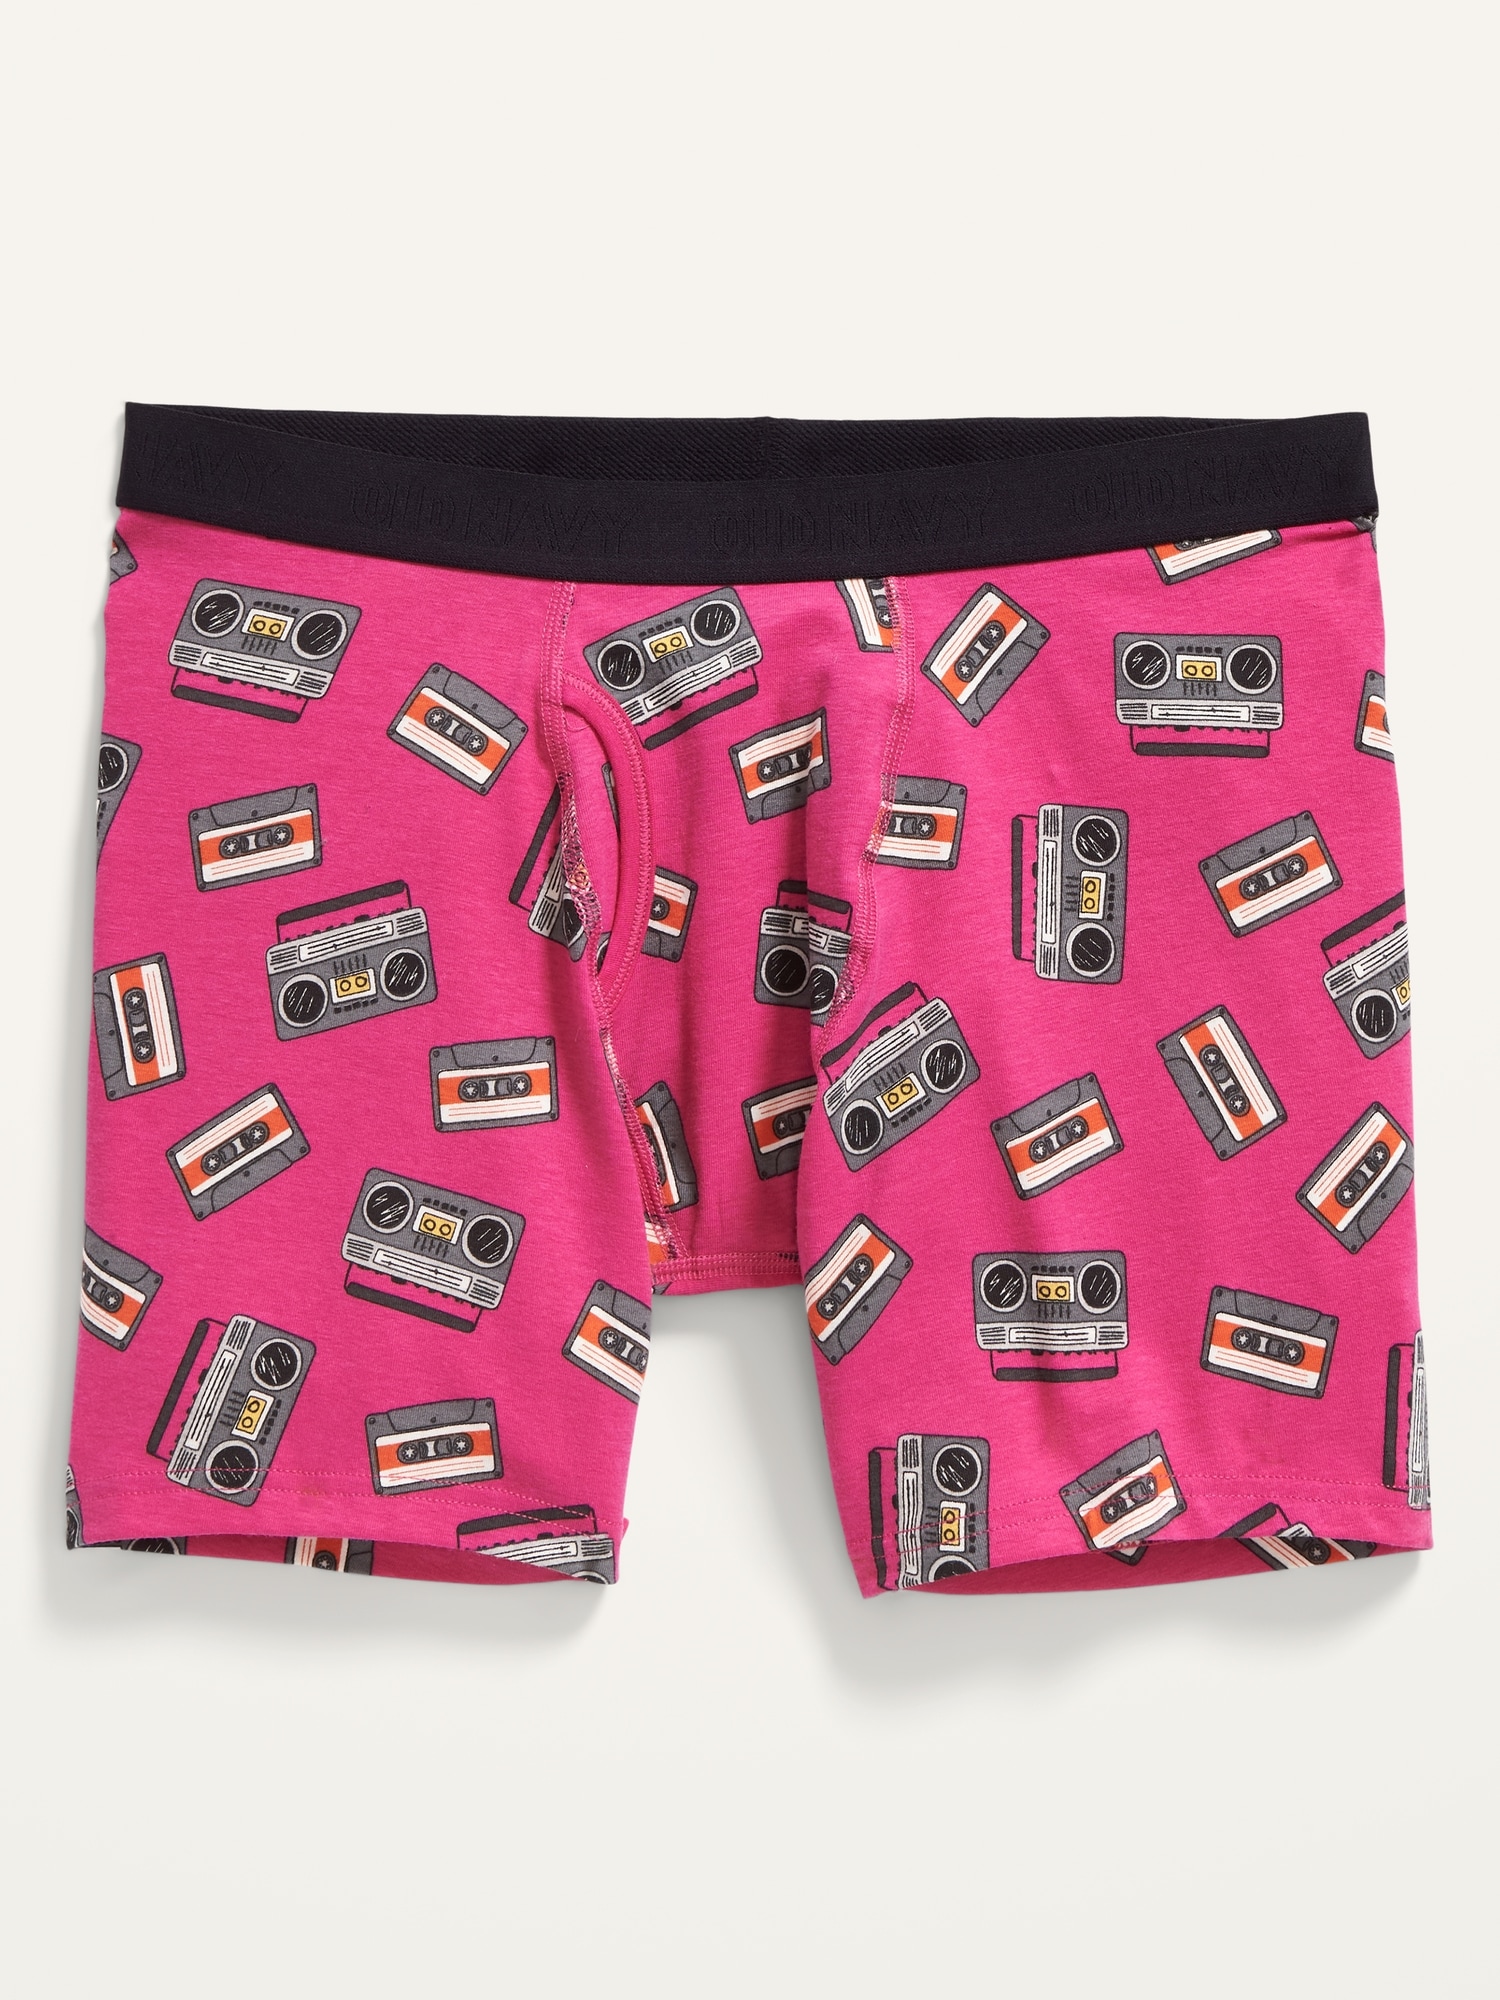 Soft-Washed Built-In Flex Printed Boxer-Brief Underwear for Men --6.25-inch  inseam